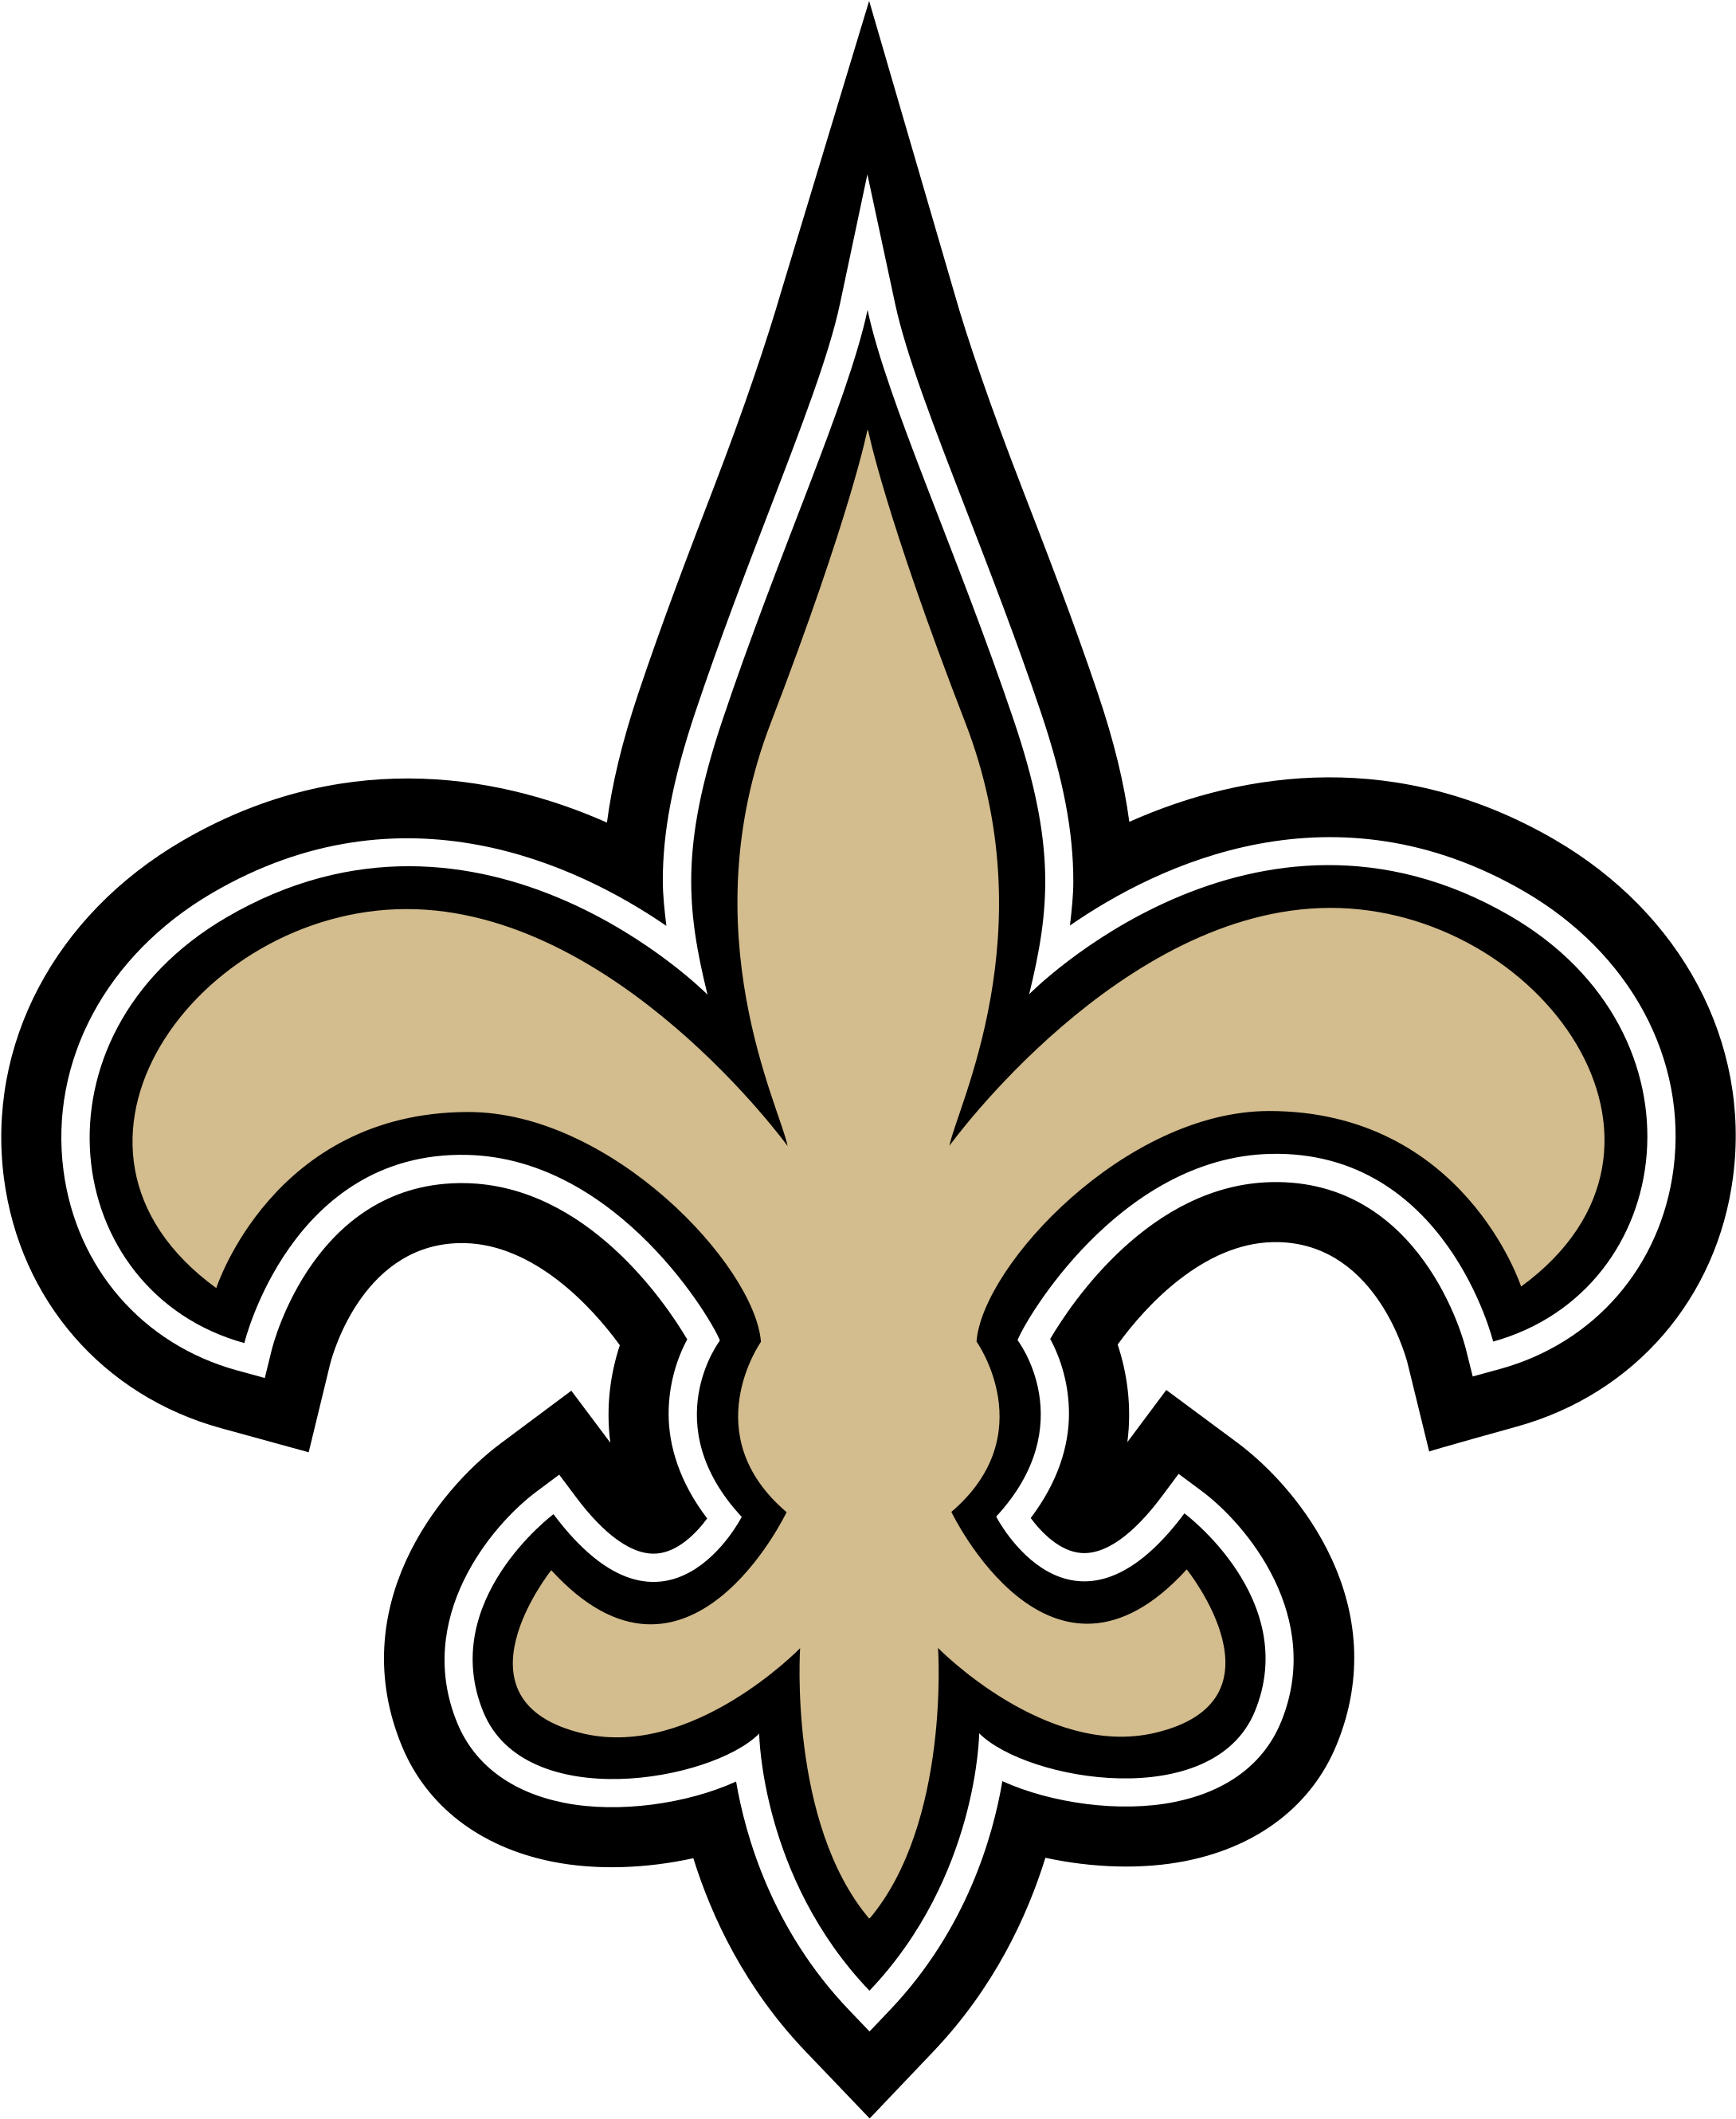 HD New Orleans Saints Logo Transparent.